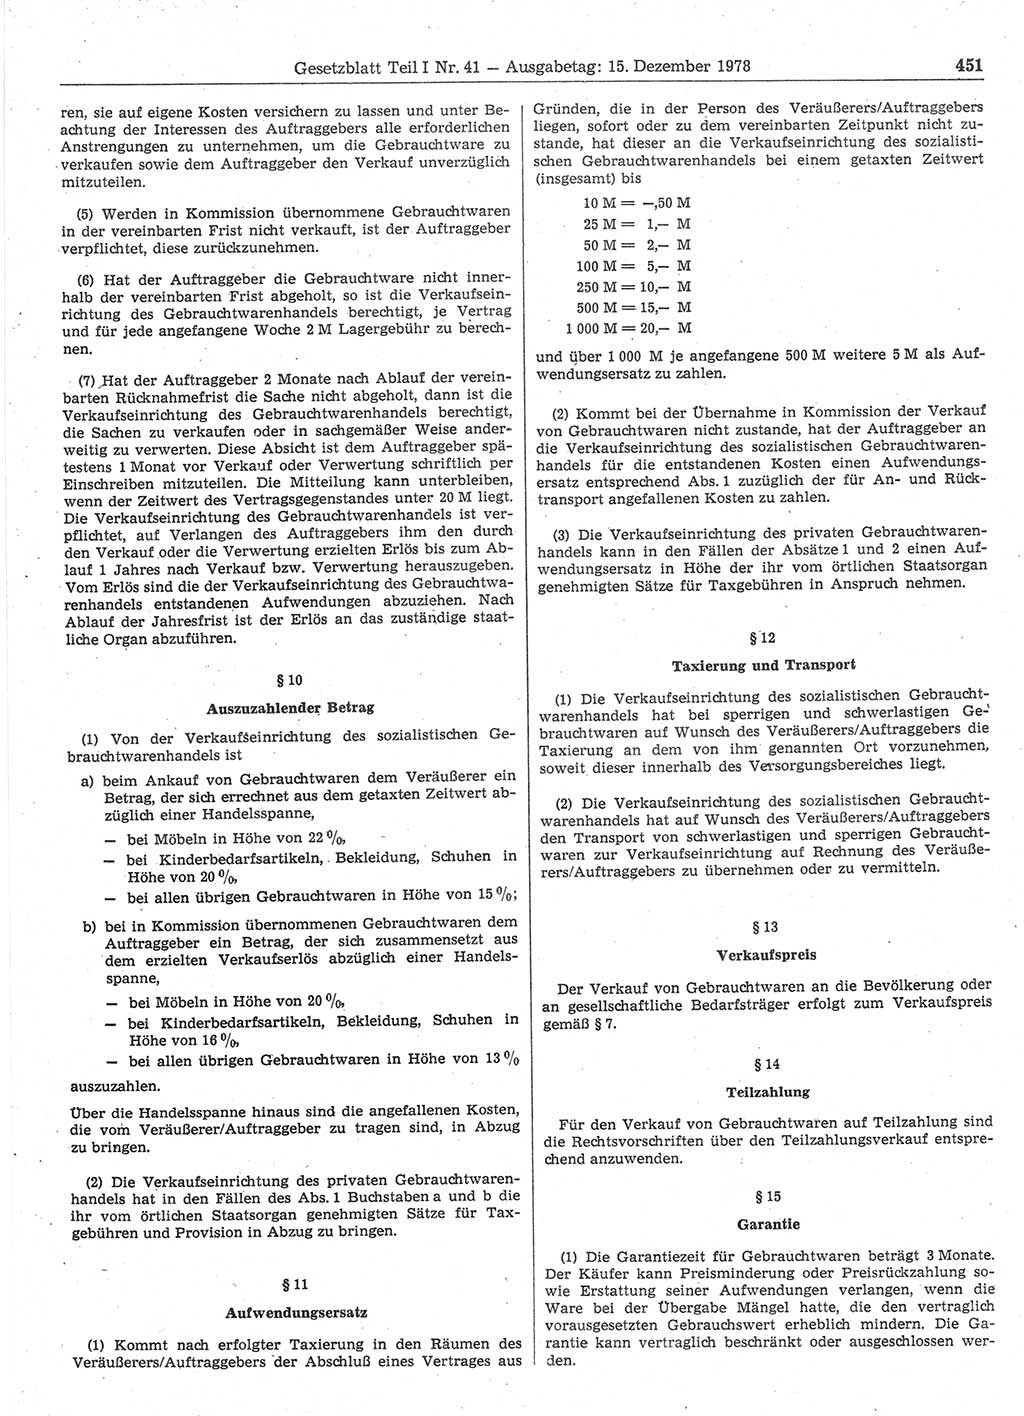 Gesetzblatt (GBl.) der Deutschen Demokratischen Republik (DDR) Teil Ⅰ 1978, Seite 451 (GBl. DDR Ⅰ 1978, S. 451)